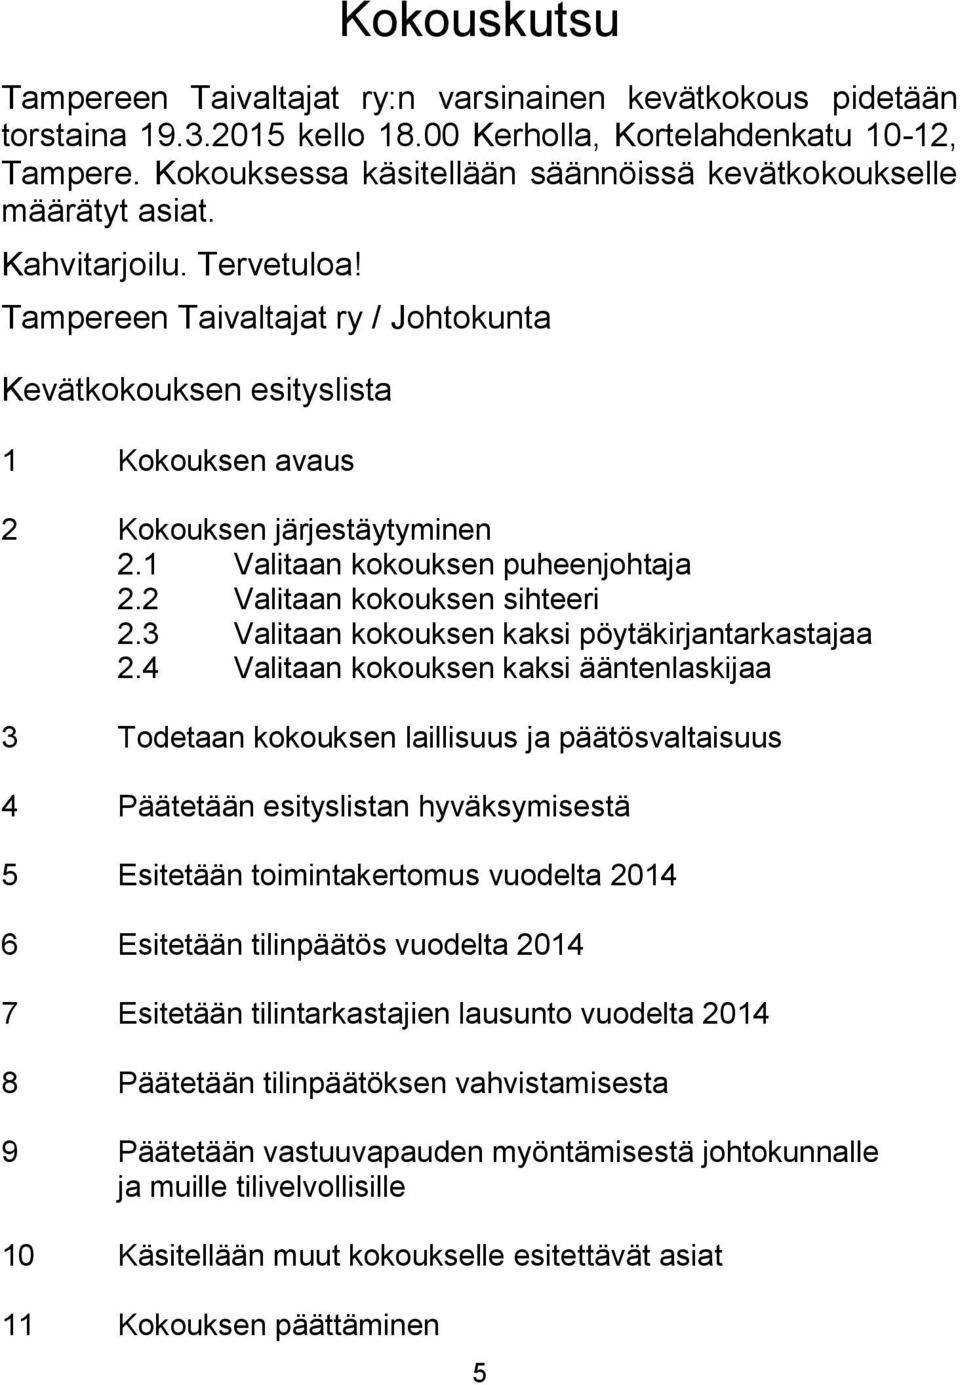 Tampereen Taivaltajat ry / Johtokunta Kevätkokouksen esityslista 1 Kokouksen avaus 2 Kokouksen järjestäytyminen 2.1 Valitaan kokouksen puheenjohtaja 2.2 Valitaan kokouksen sihteeri 2.